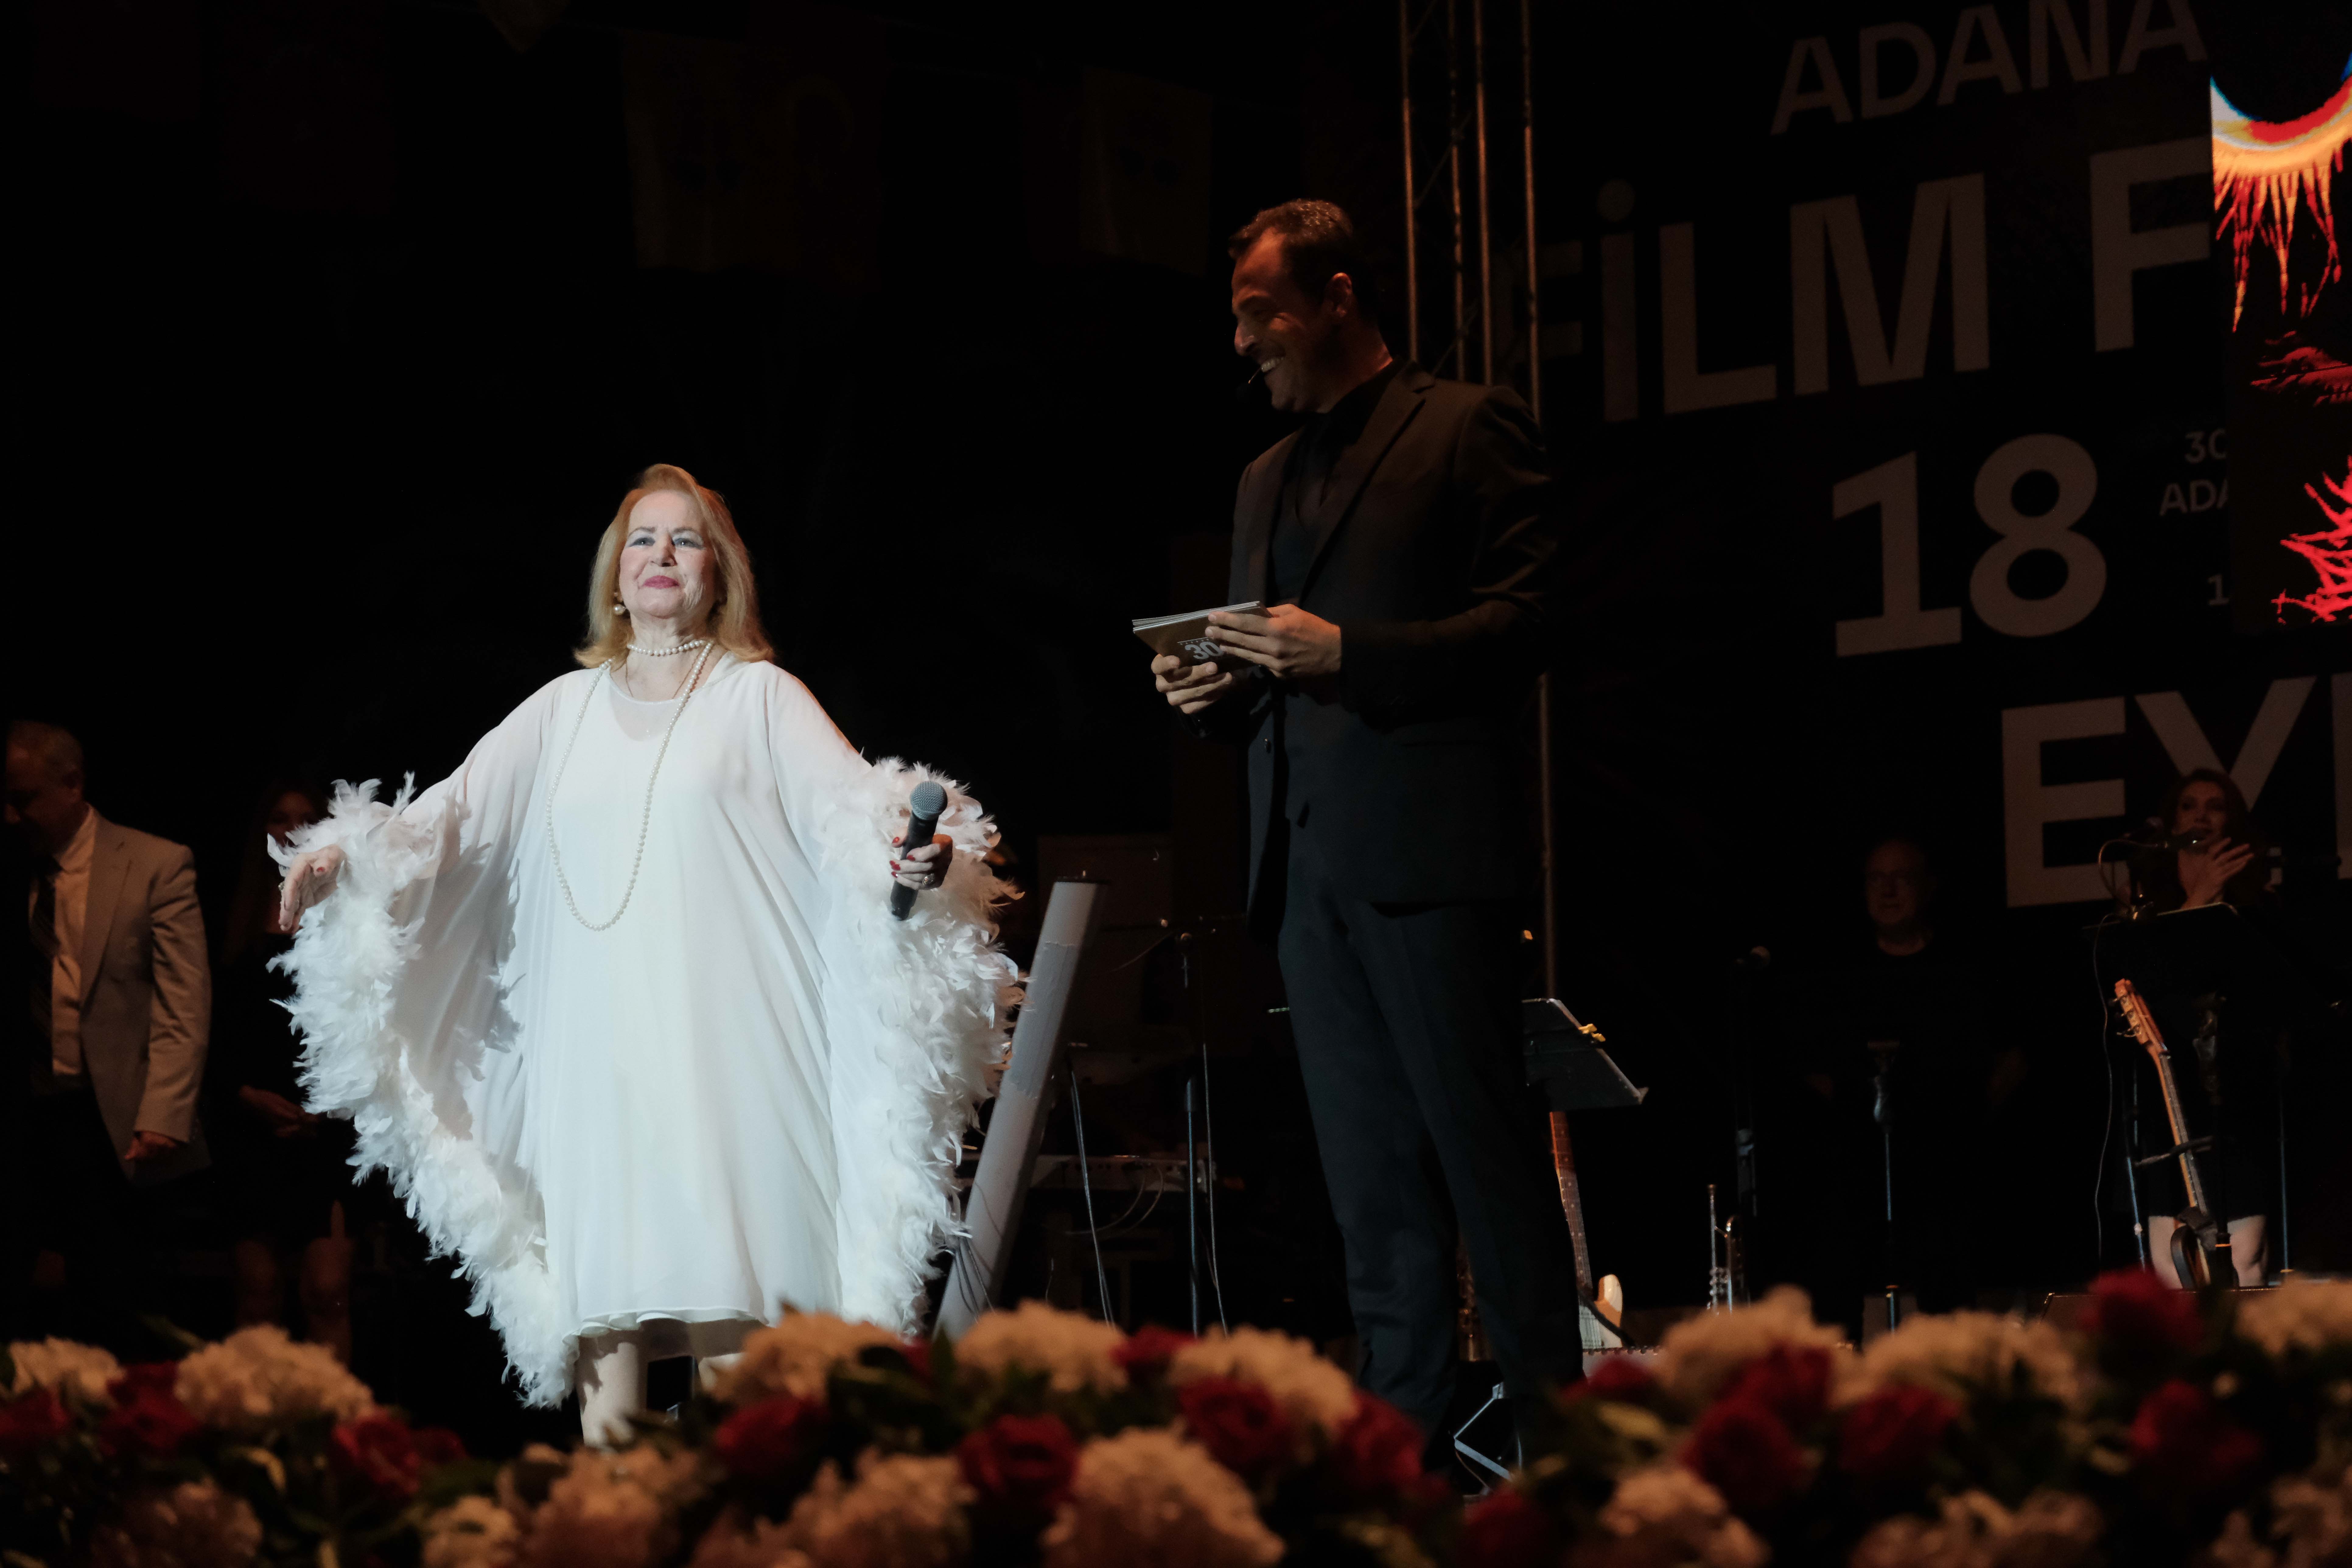 Uluslararası Adana Altın Koza Film Festivali’nde emek ödülleri verildi